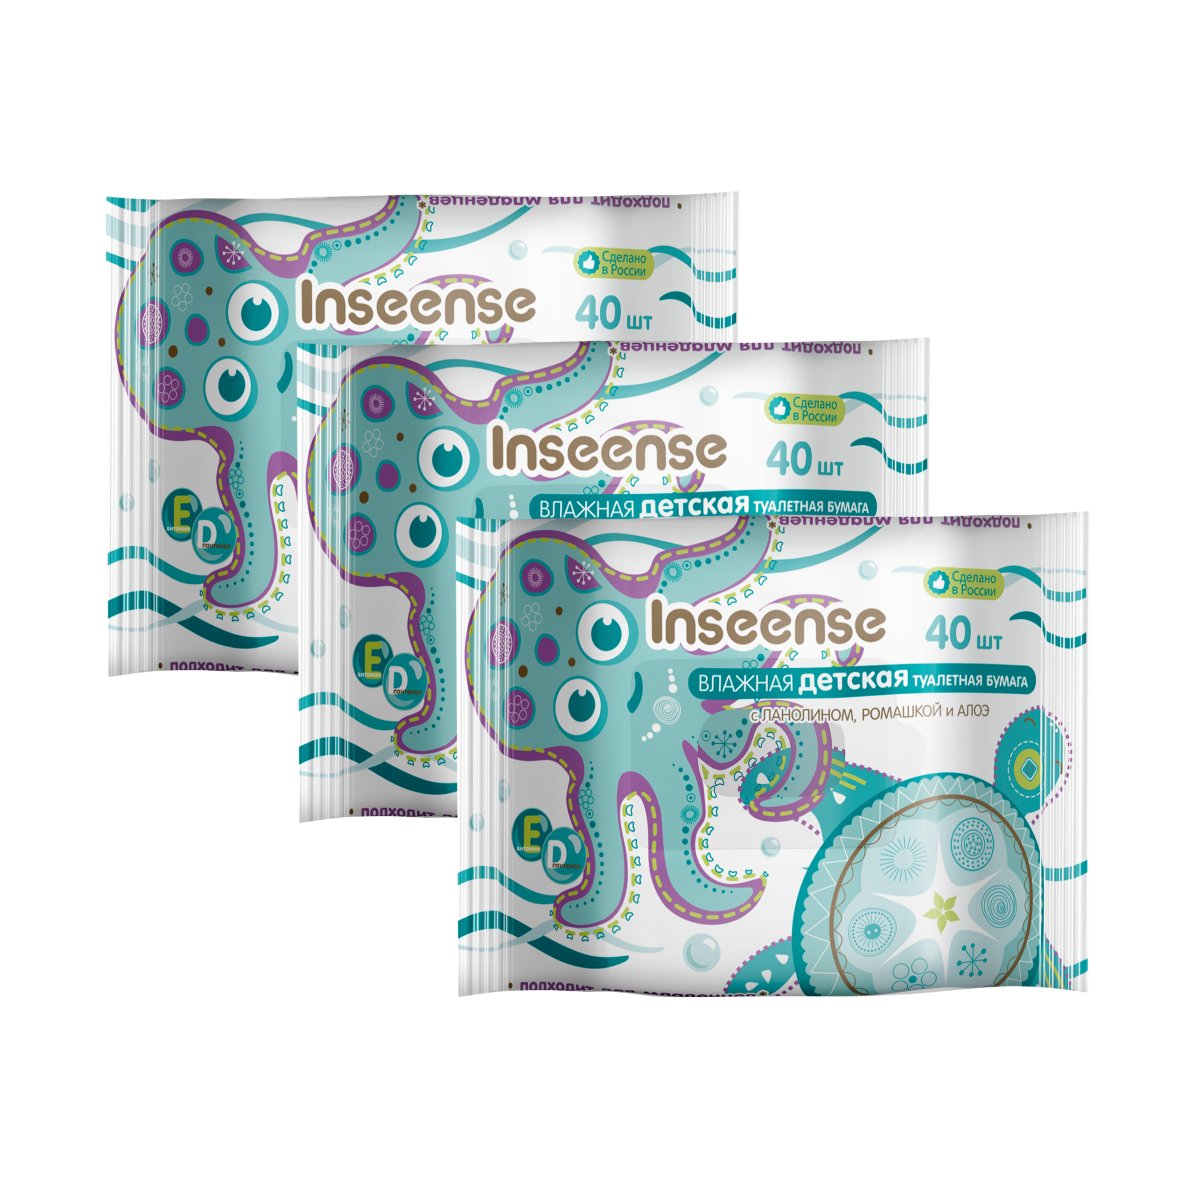 Влажная детская туалетная бумага Inseense 40 шт упаковка 3 шт влажная туалетная бумага для детей reva care 80 шт